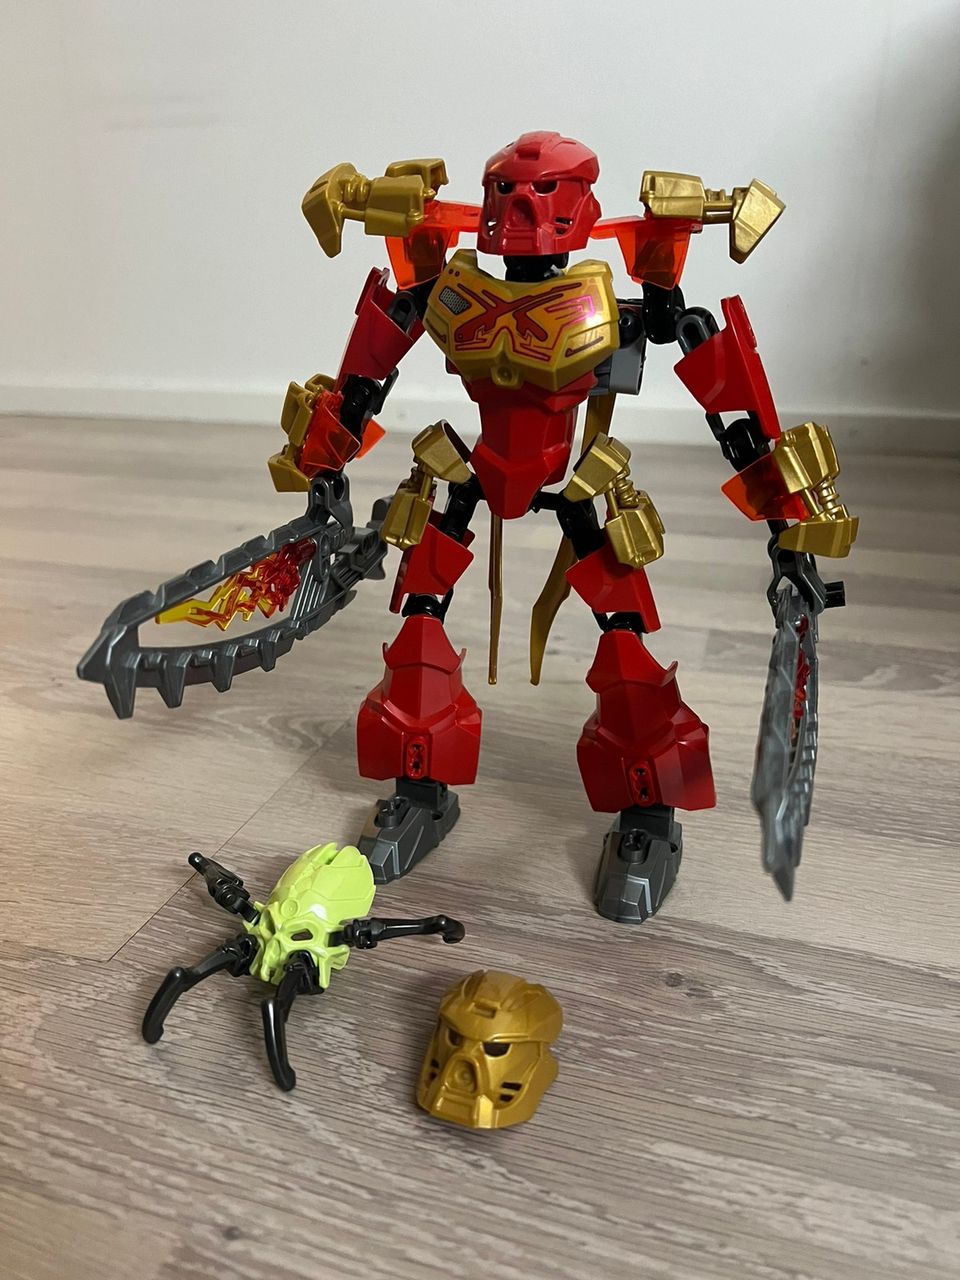 Neljä Lego Bionicle -hahmoa